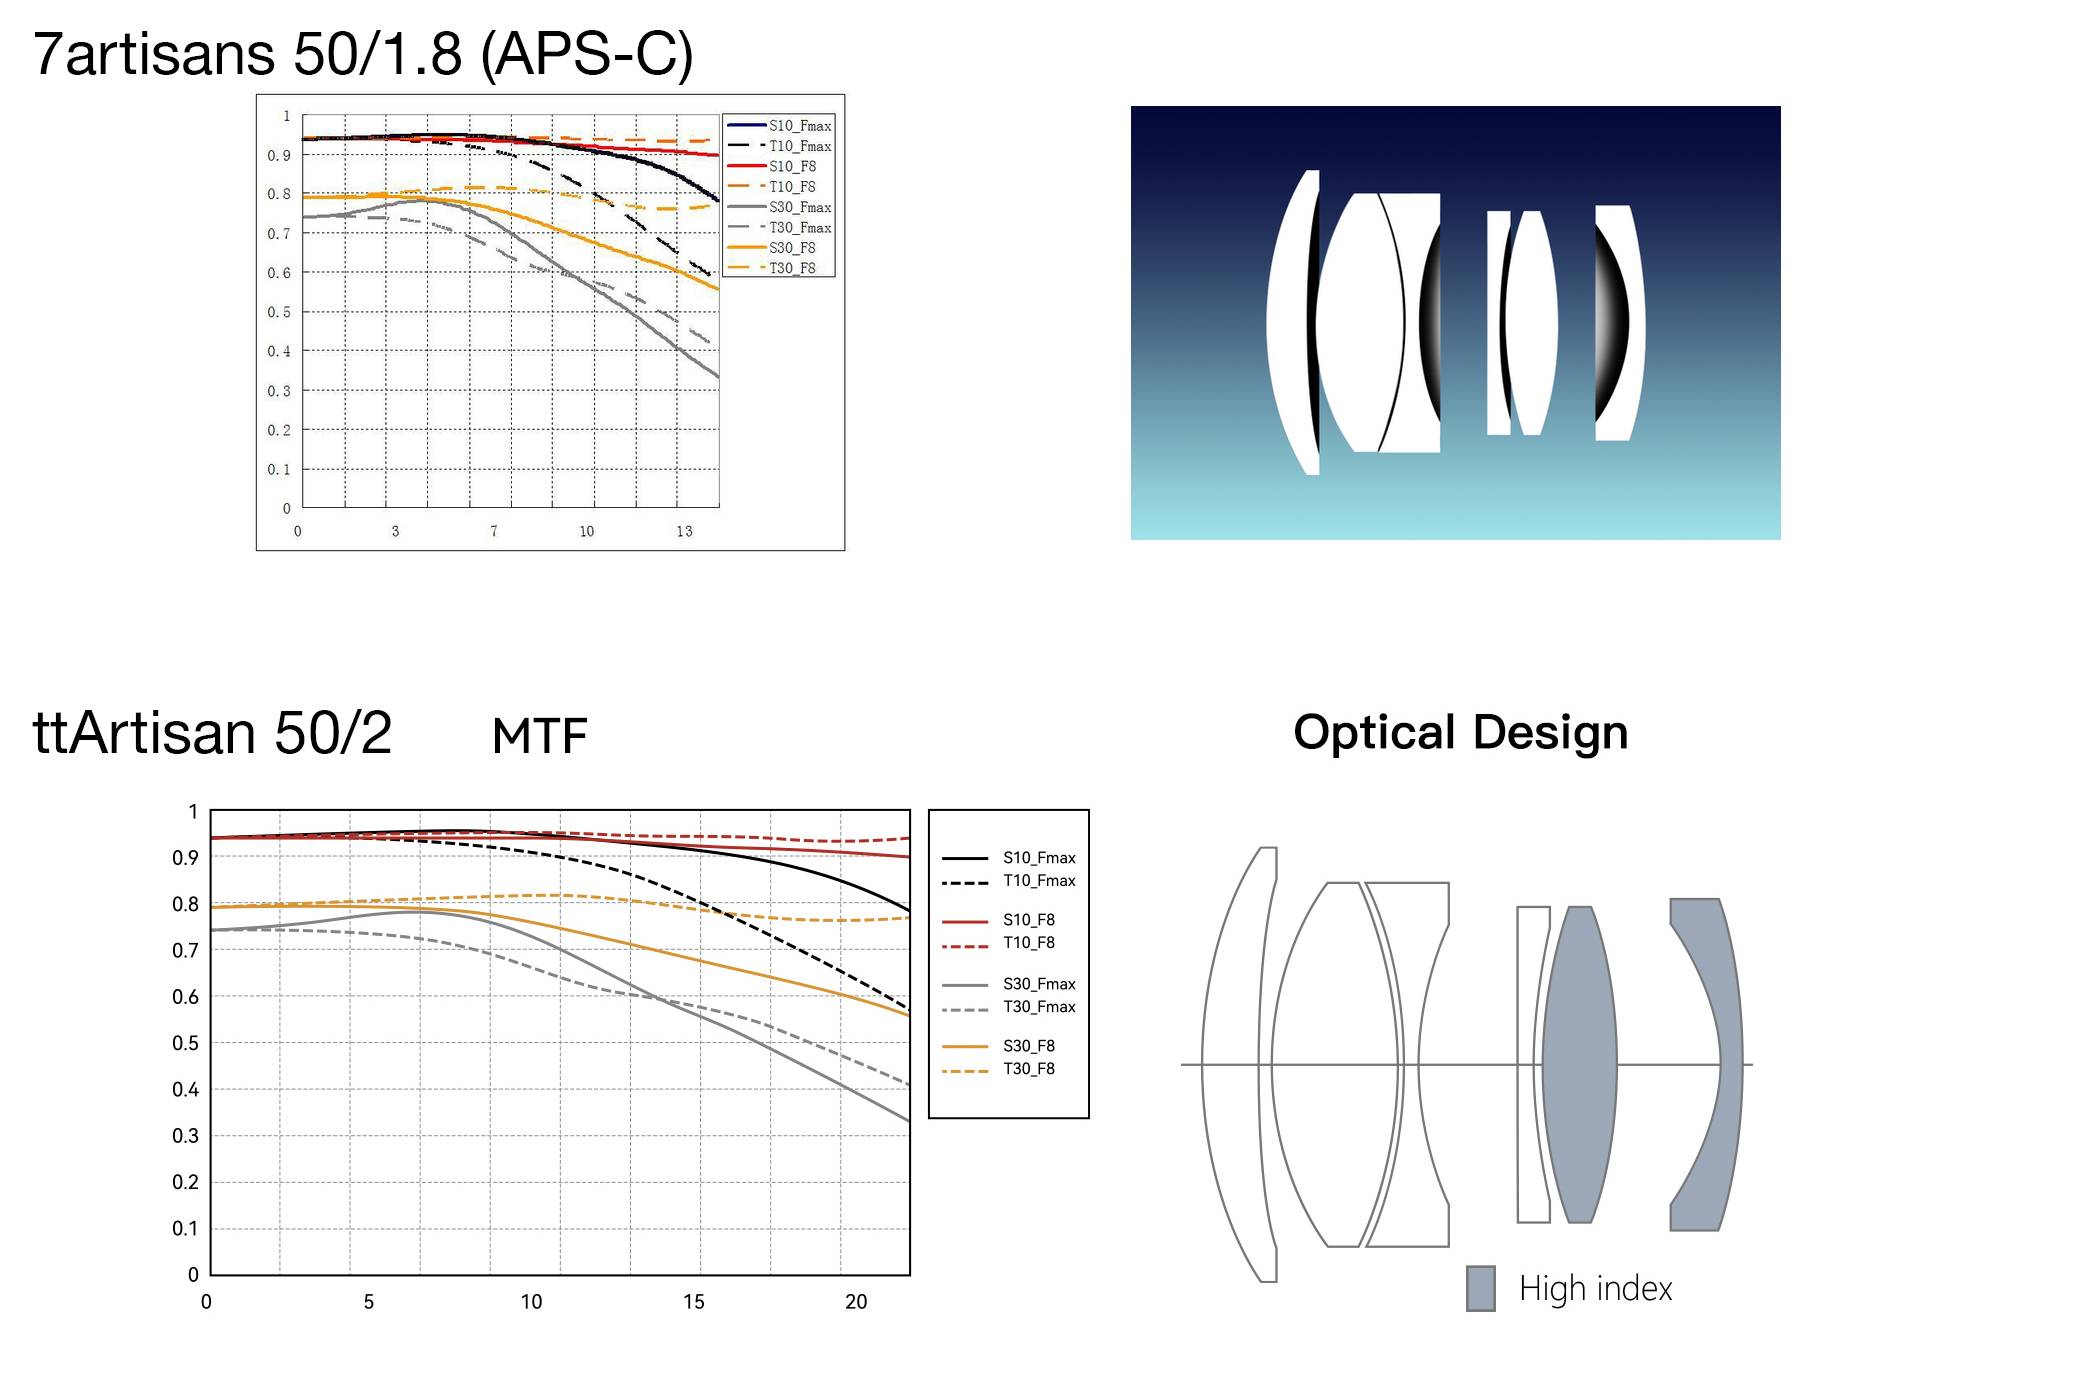 Comparación de diagramas ópticos y gráficos MTF de lentes 7artisans 50/1.8 y TTArtisan 50/2. Los gráficos MTF son completamente indistinguibles, pero tienen diferentes etiquetas a lo largo del eje de altura de la imagen, ¡lo cual es un fraude por parte del fabricante!